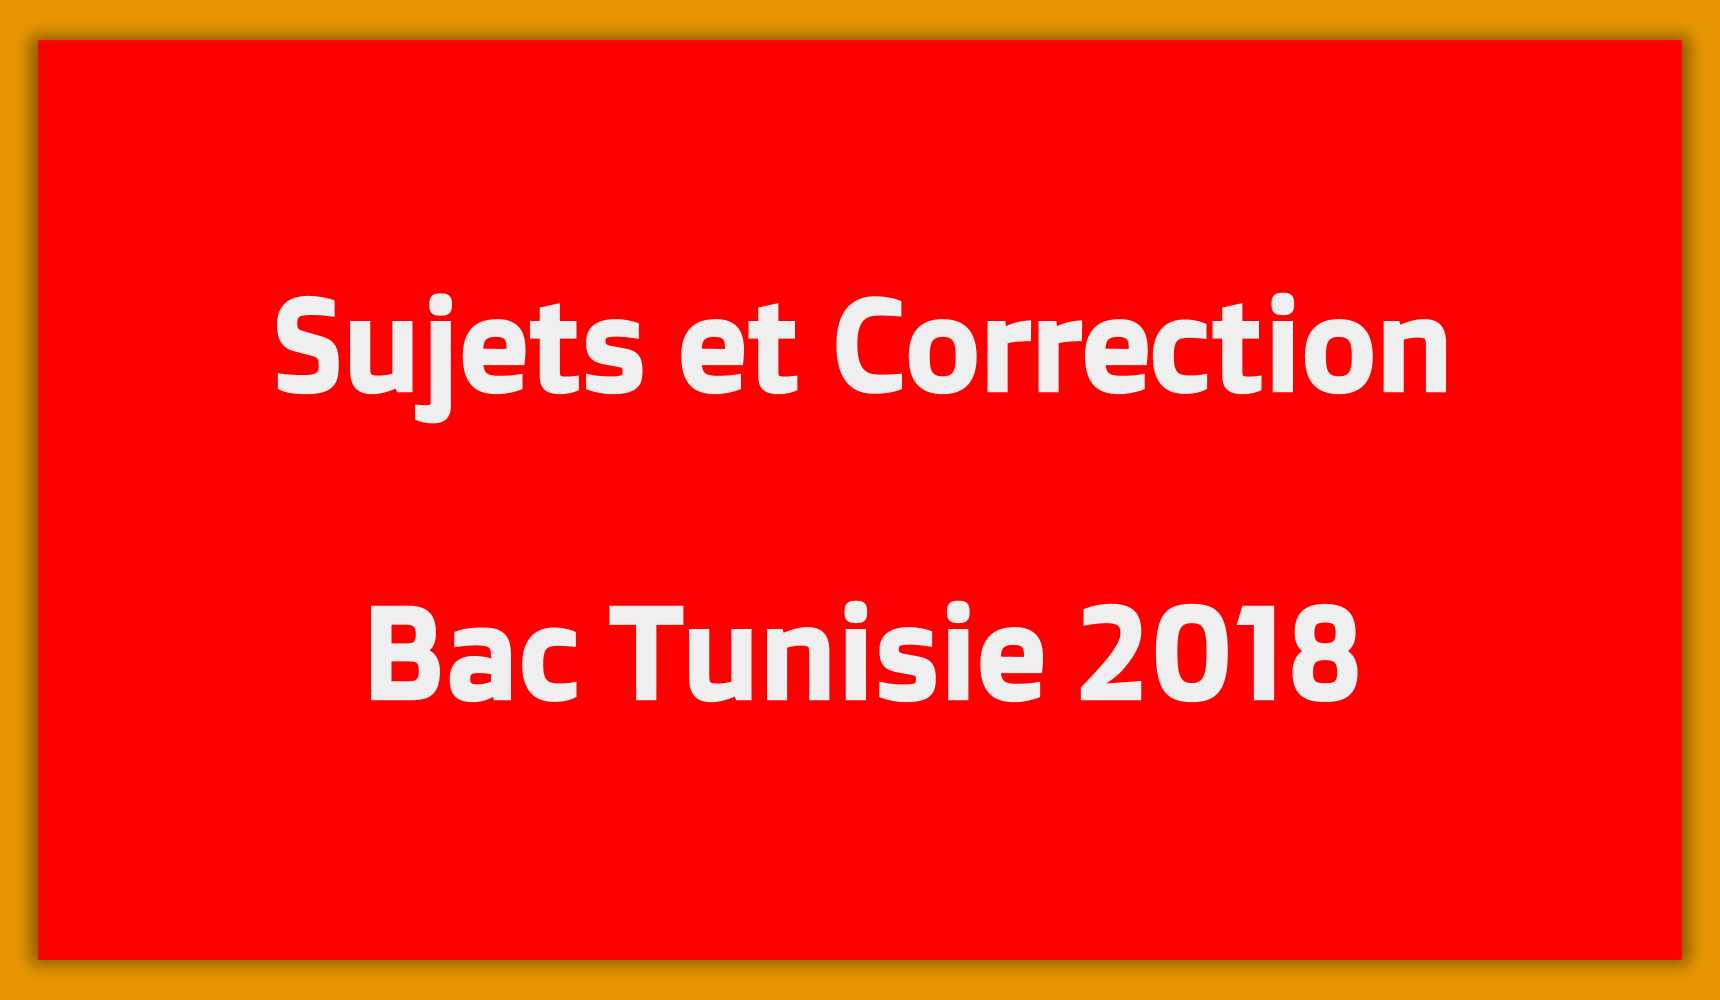 Bac Tunisie 2018